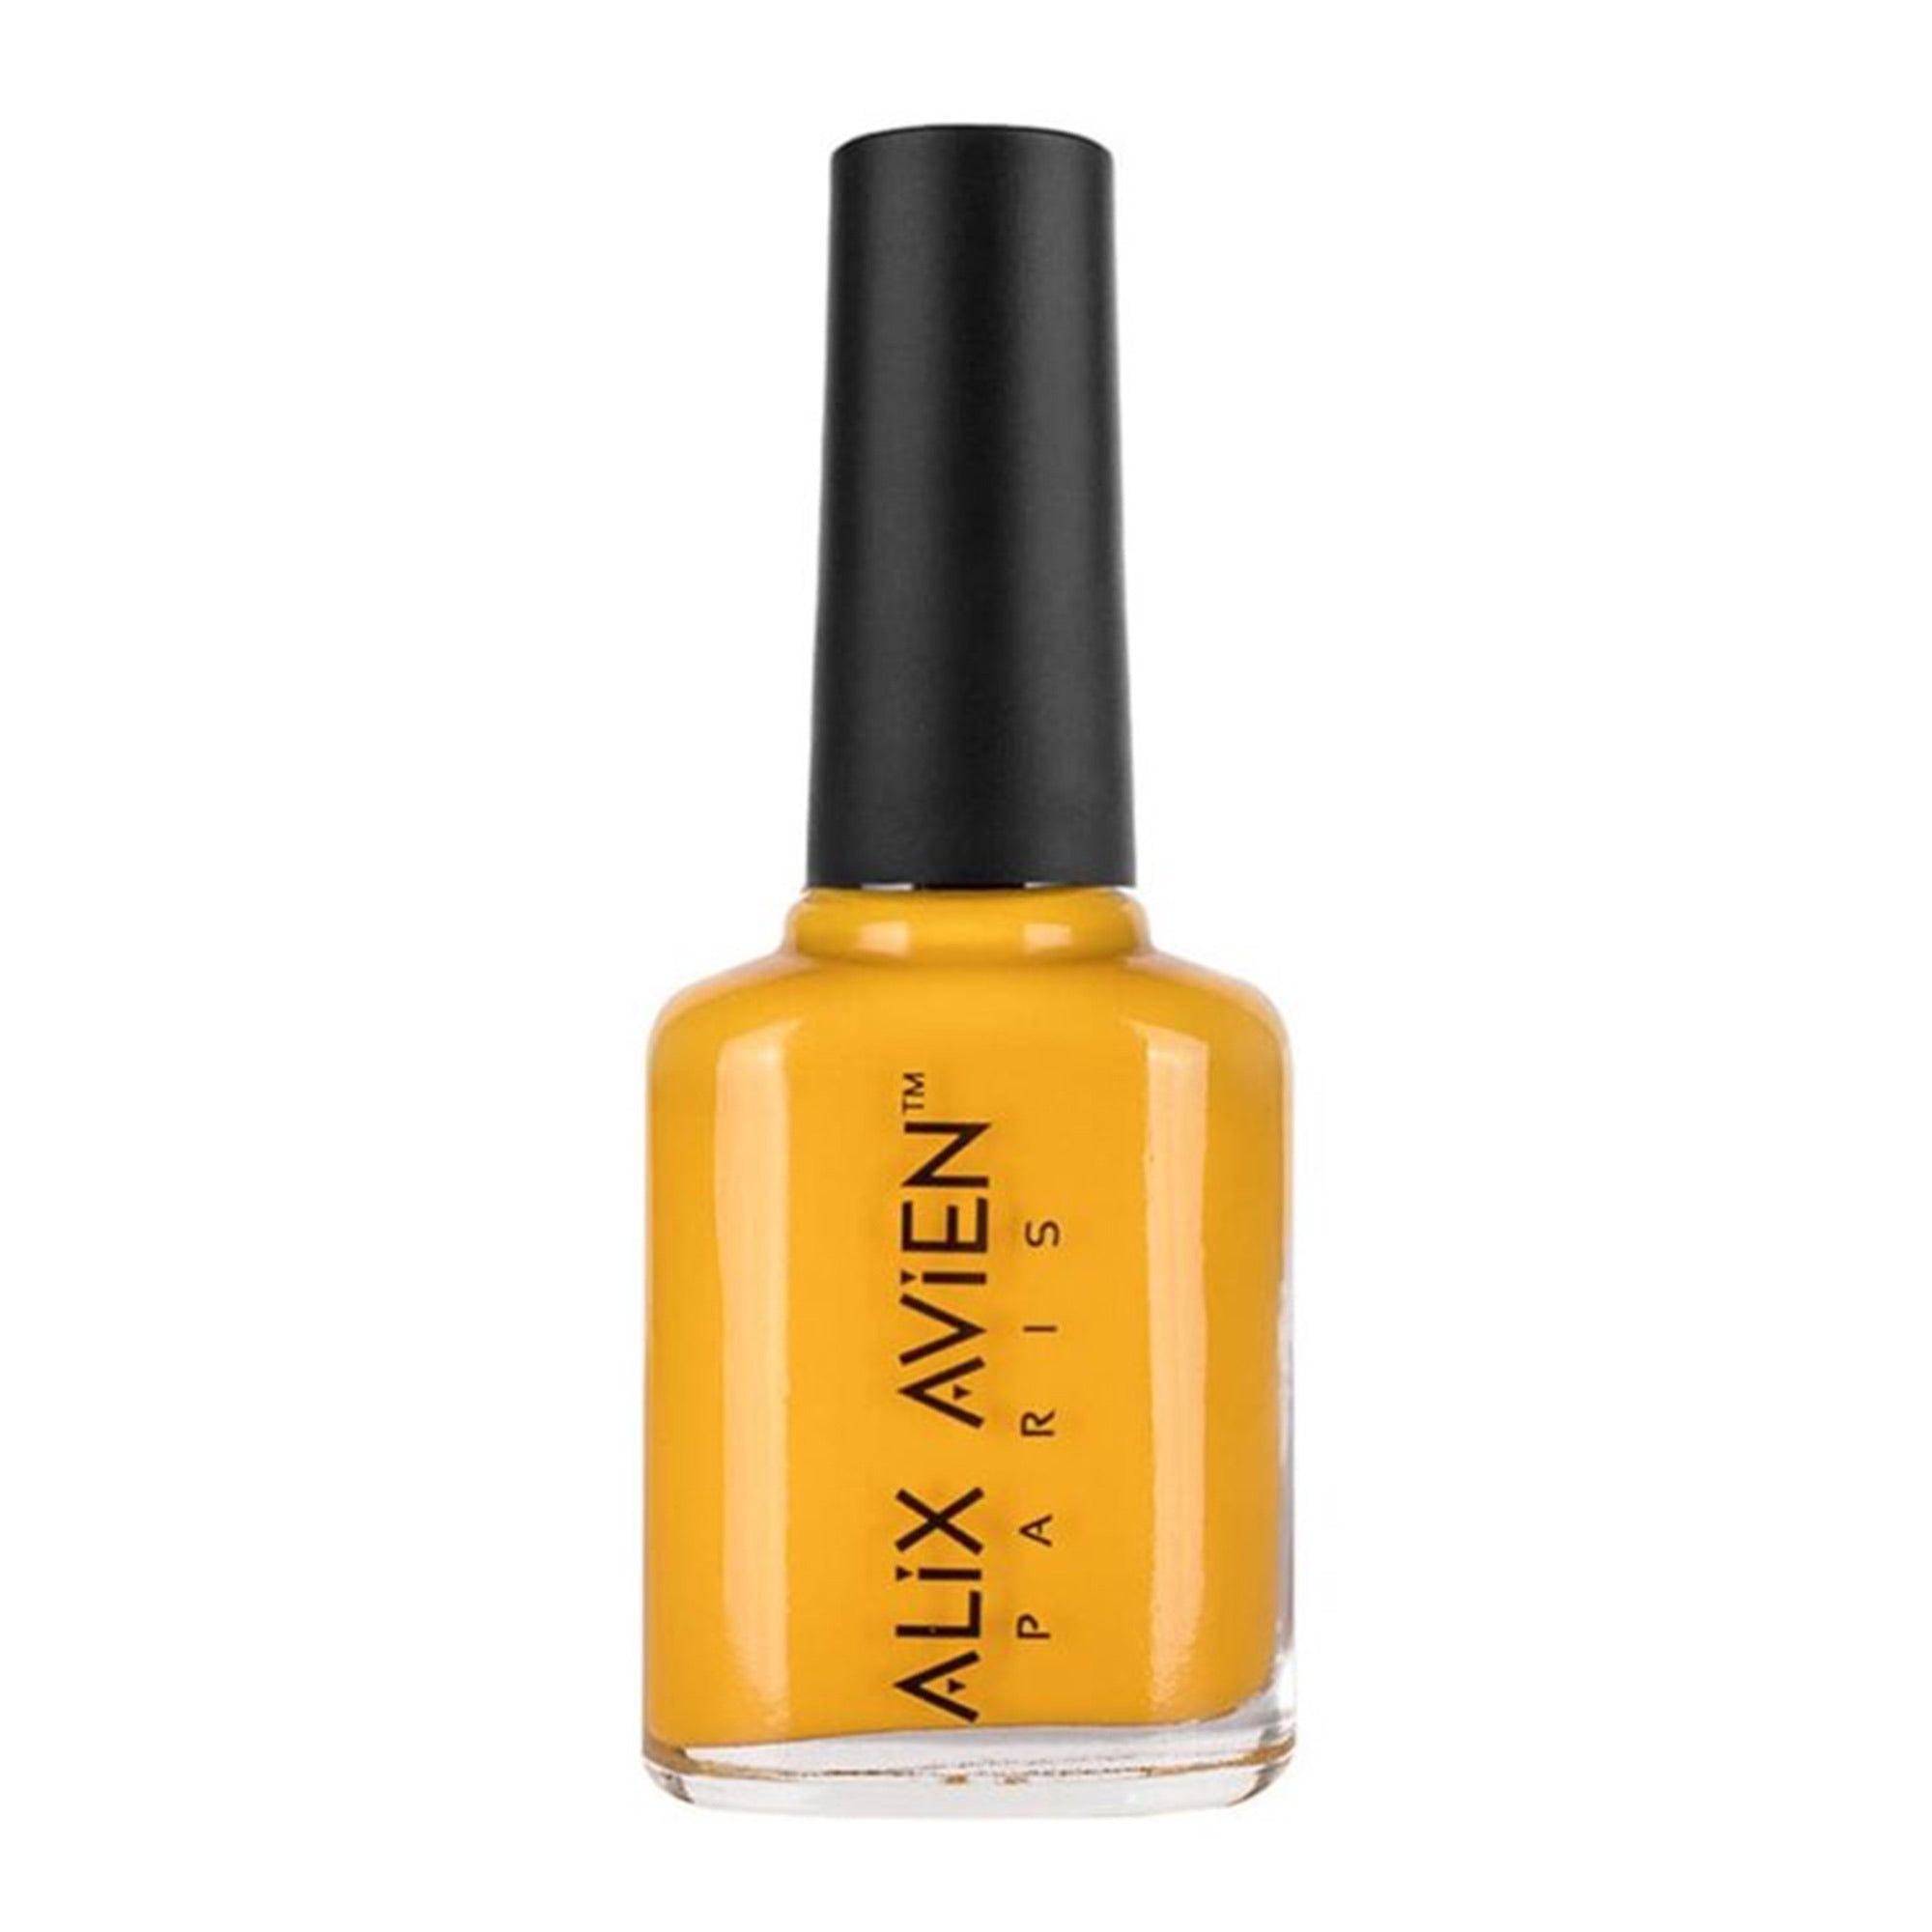 Alix Avien - Nail Polish No.68 (Bumblebee Yellow)